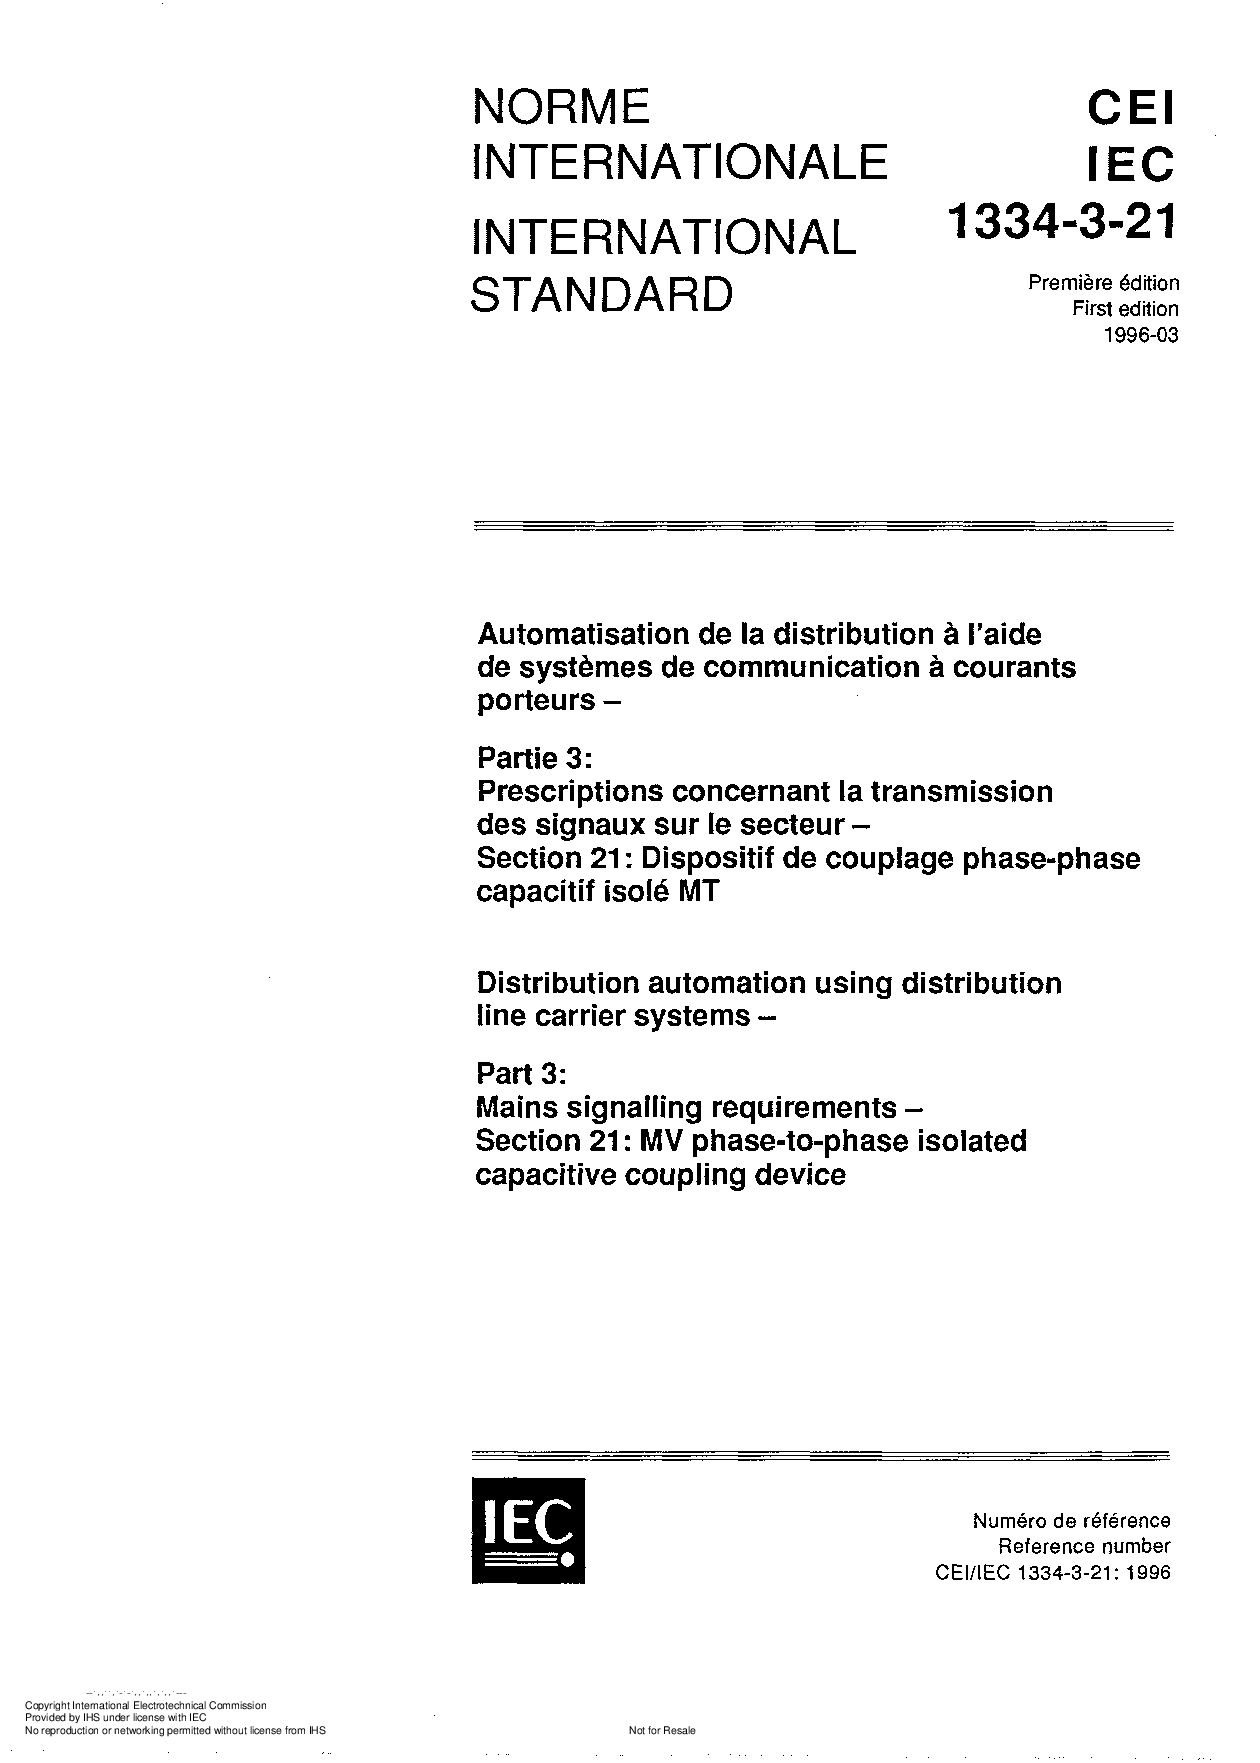 IEC 61334-3-21:1996